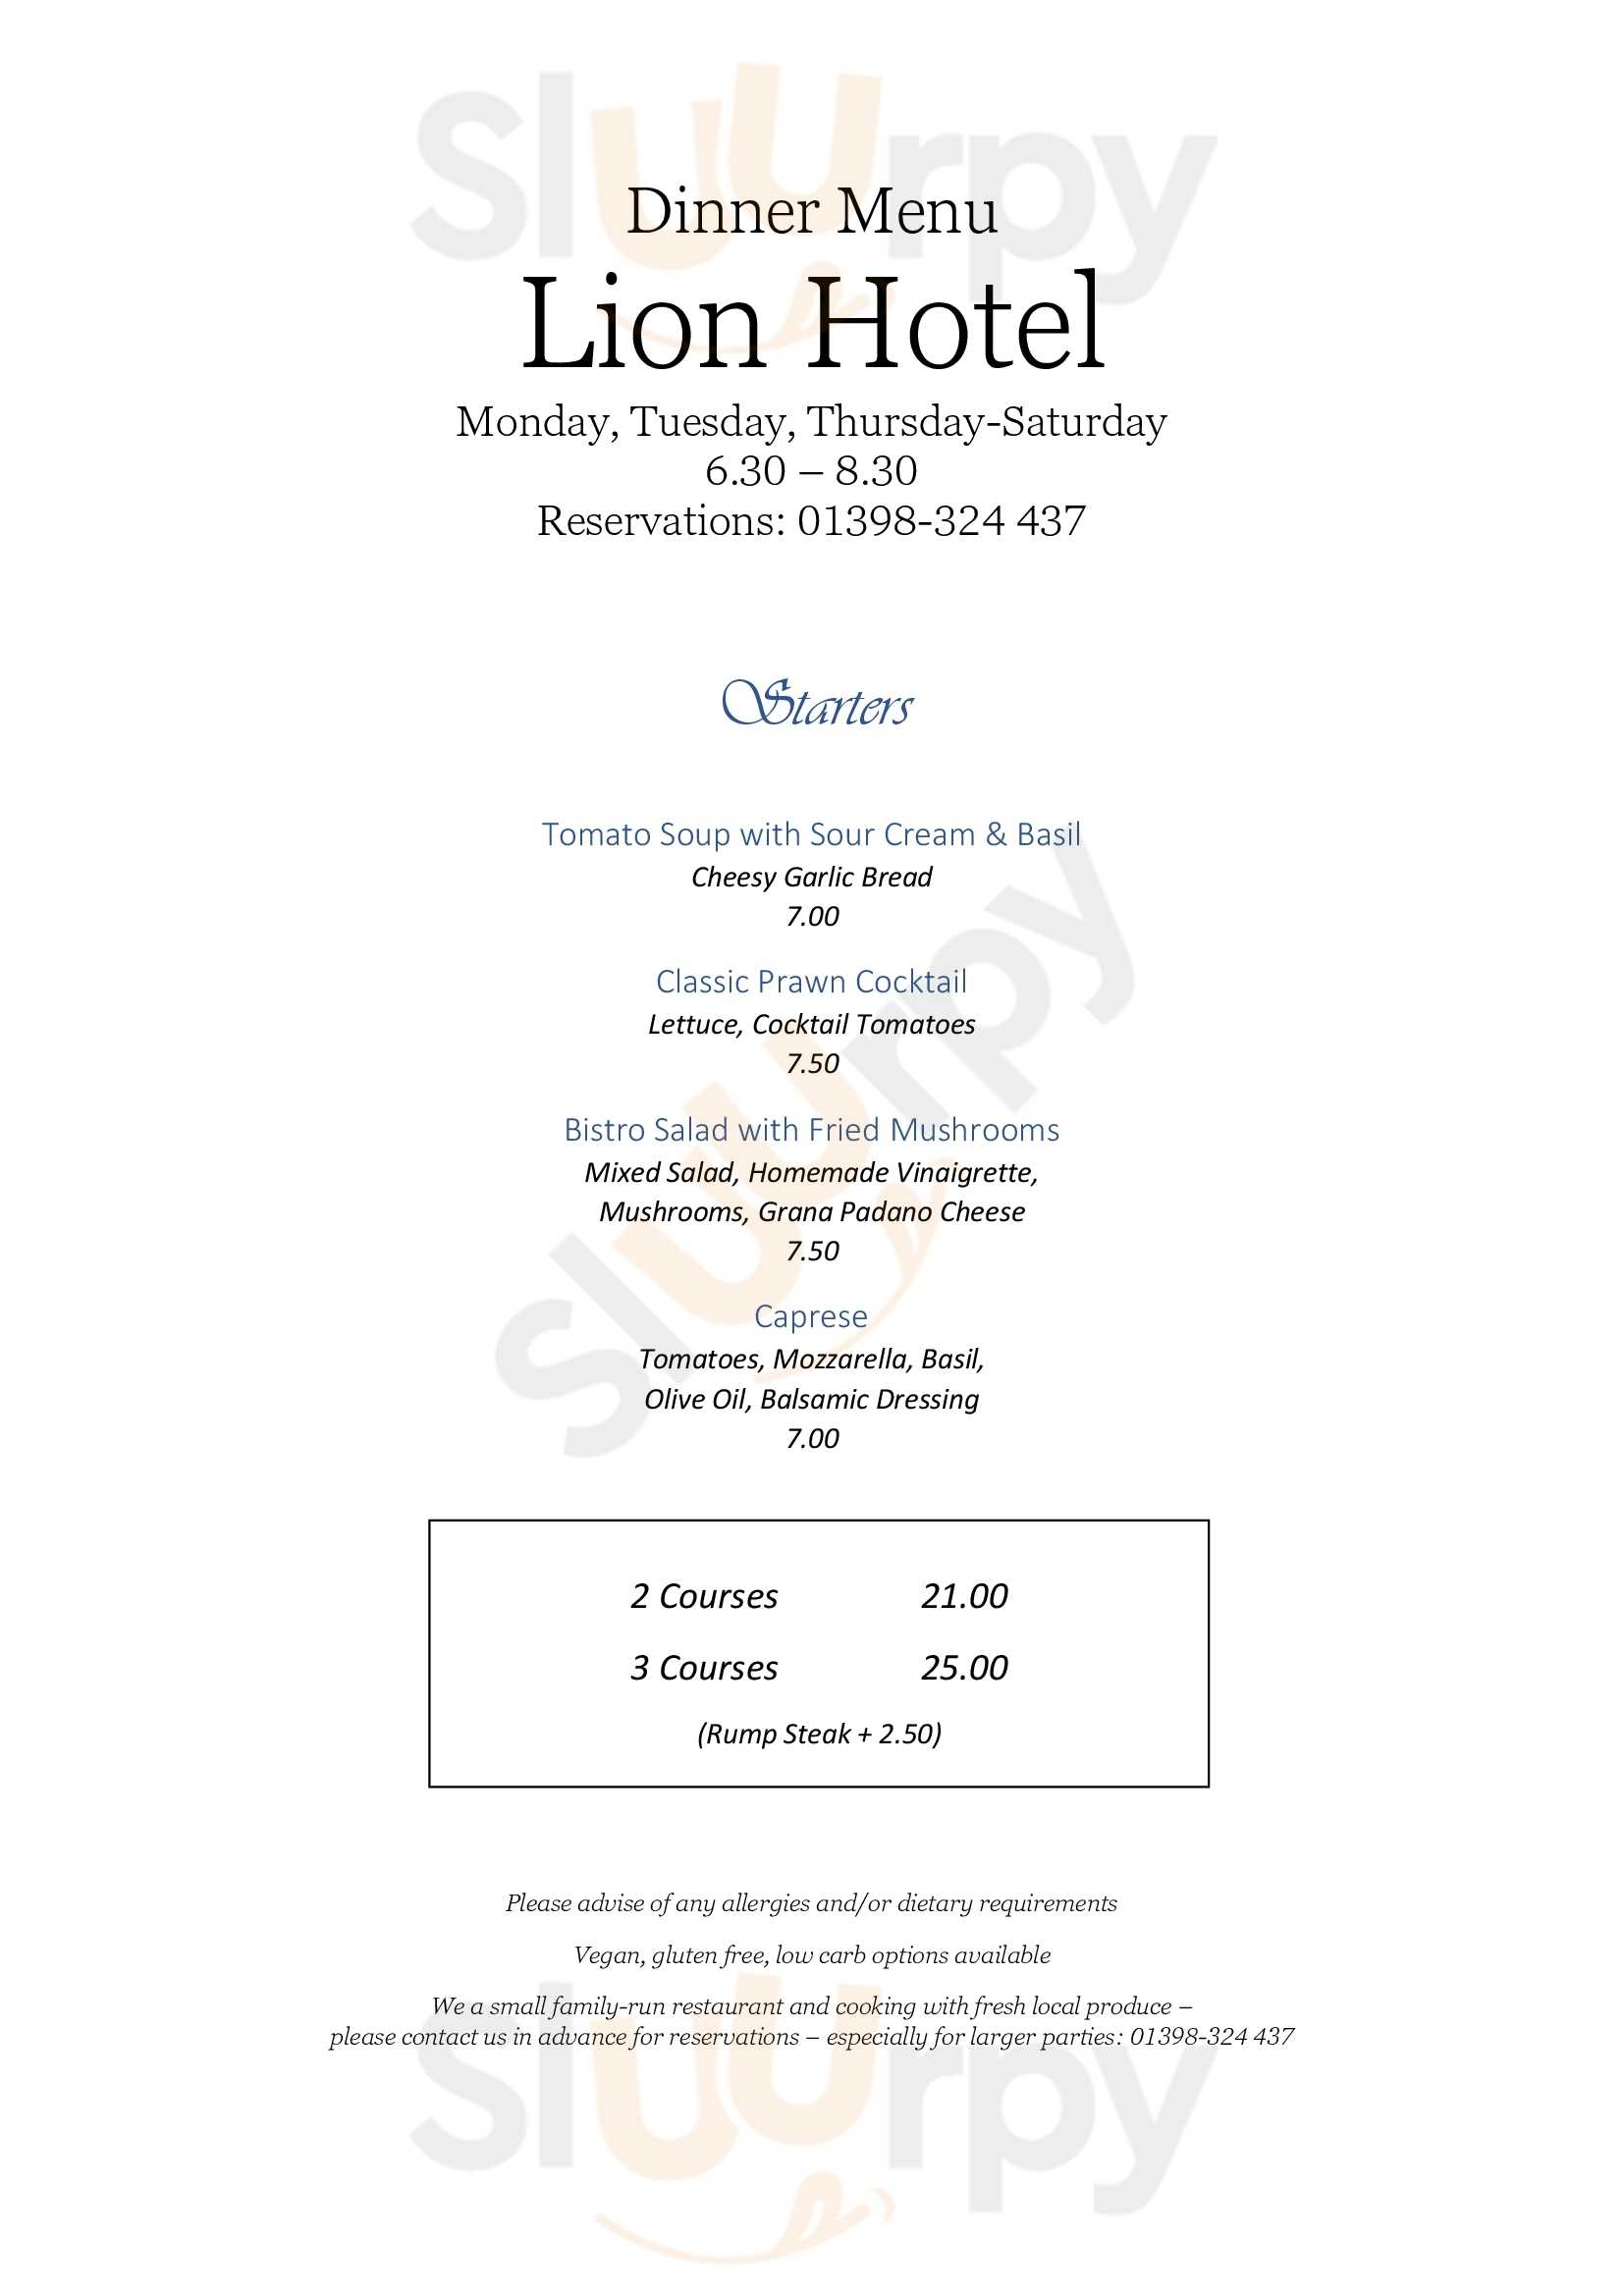 The Lion Hotel Restaurant Dulverton Menu - 1